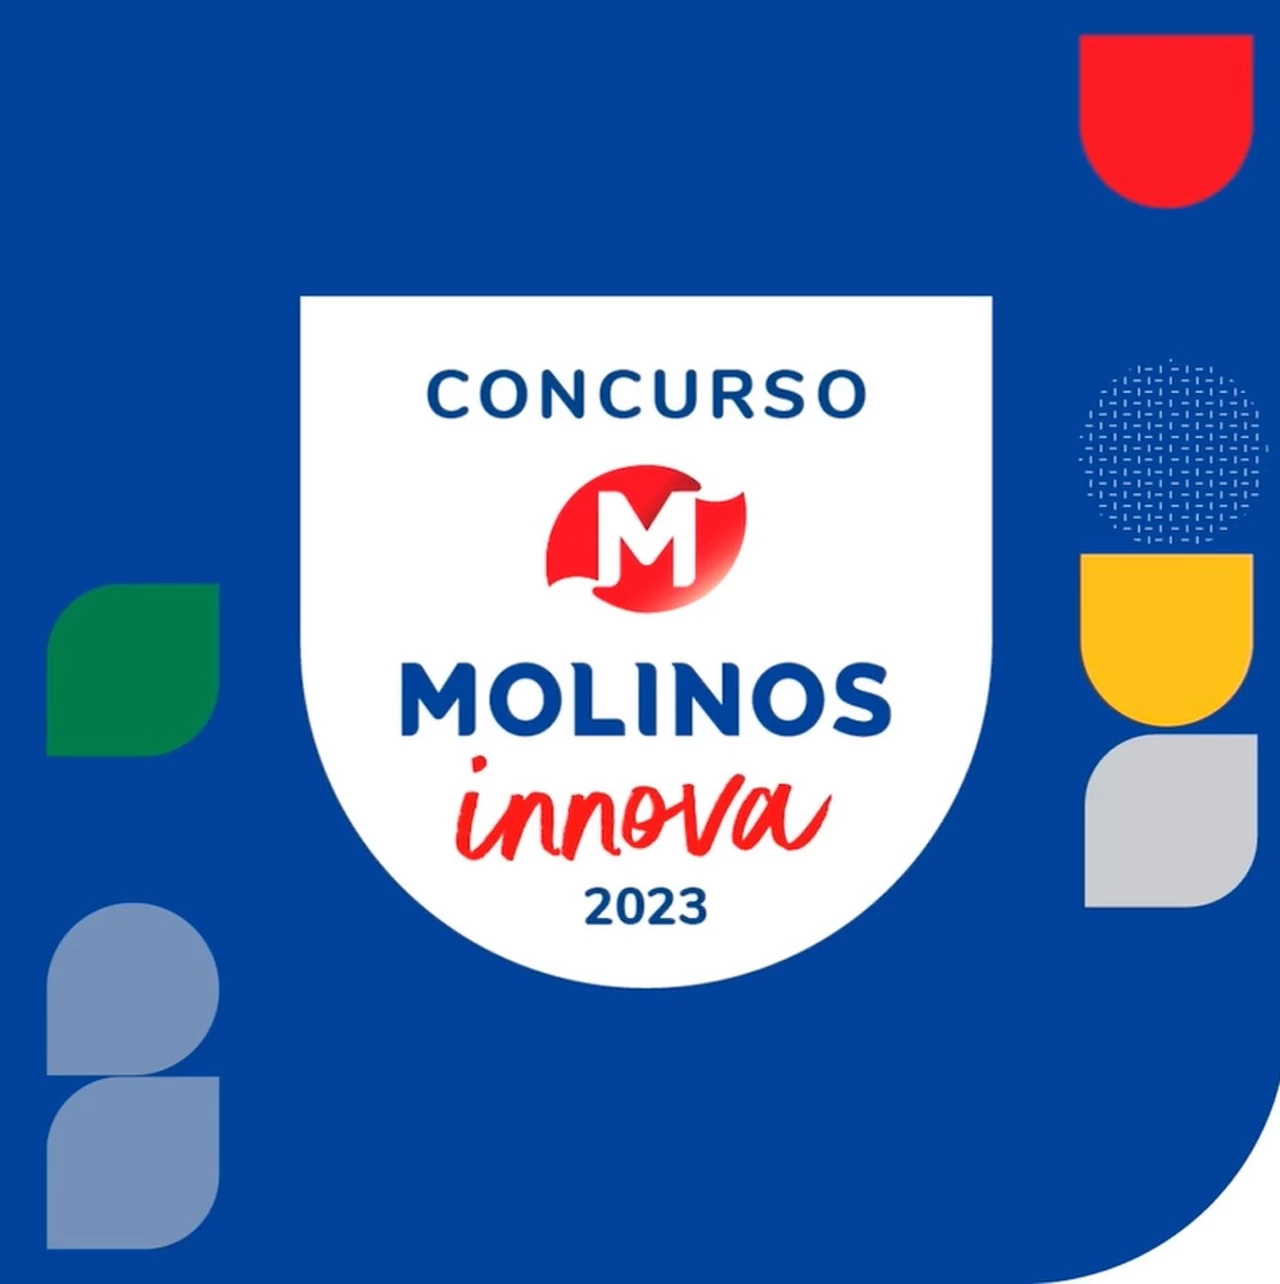 Molinos presenta la edición 2023 del concurso Molinos Innova